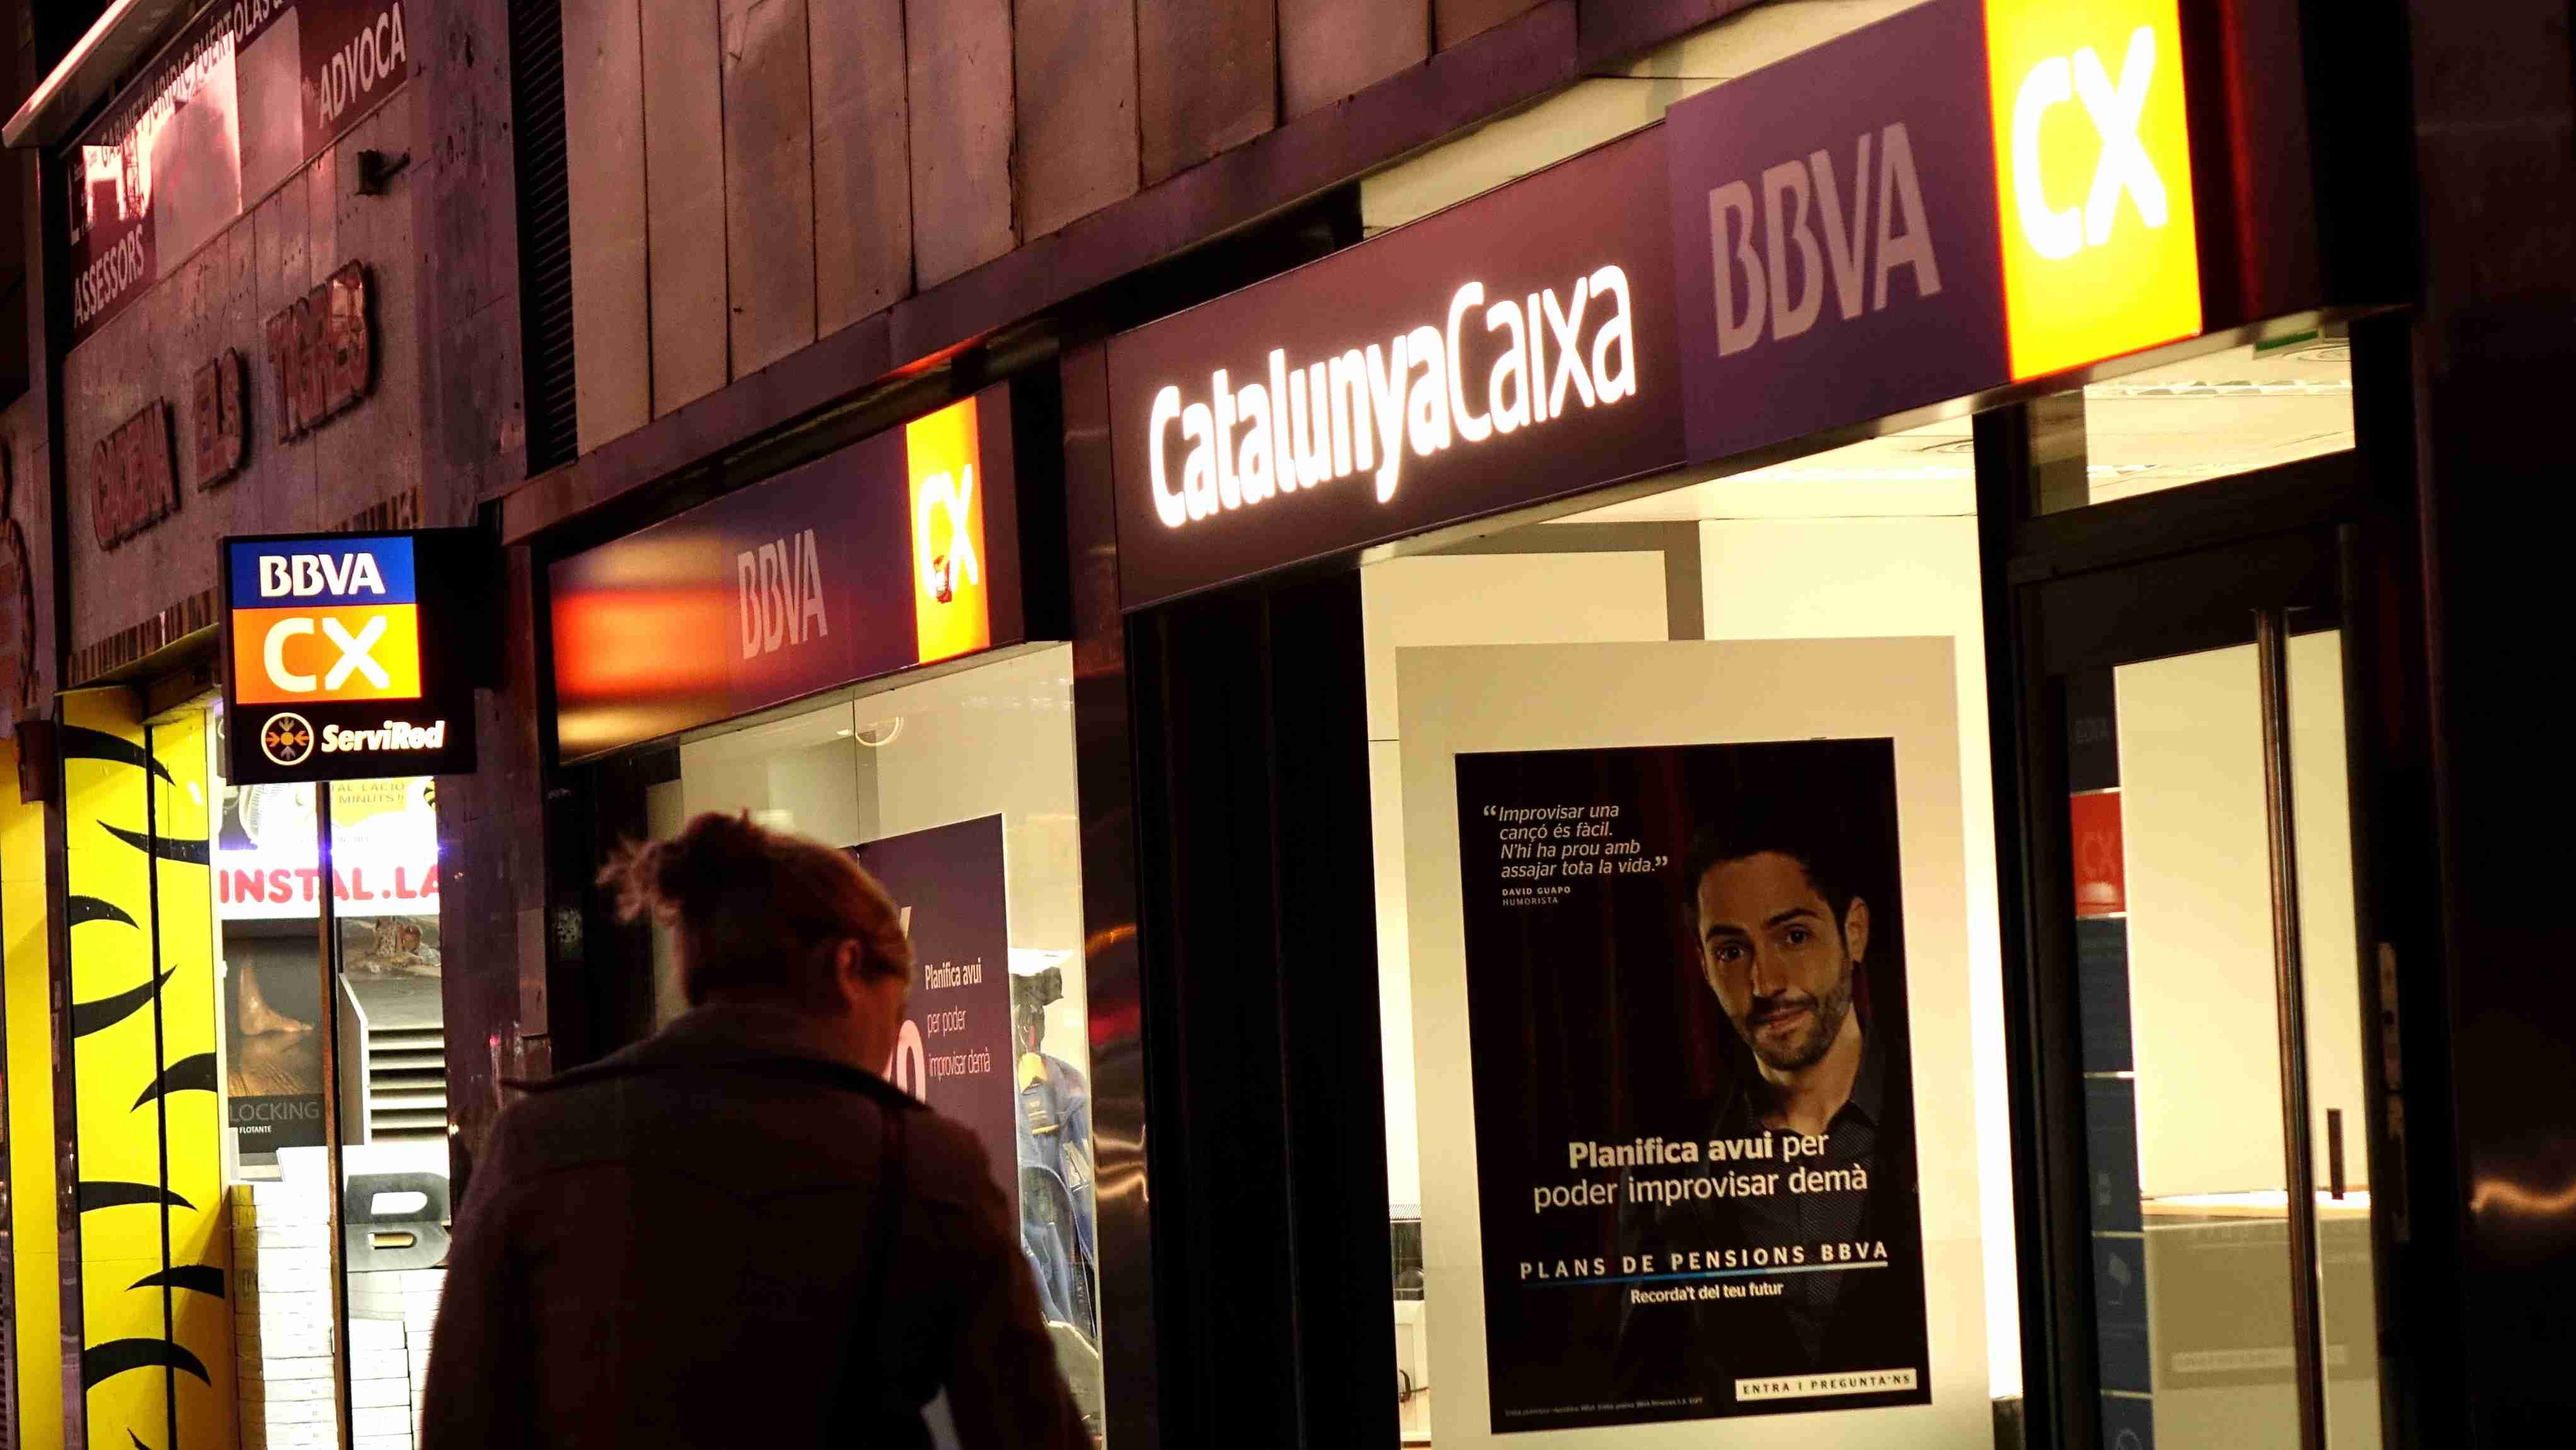 BBVA y Catalunya Caixa: una fusión que no convence a los clientes